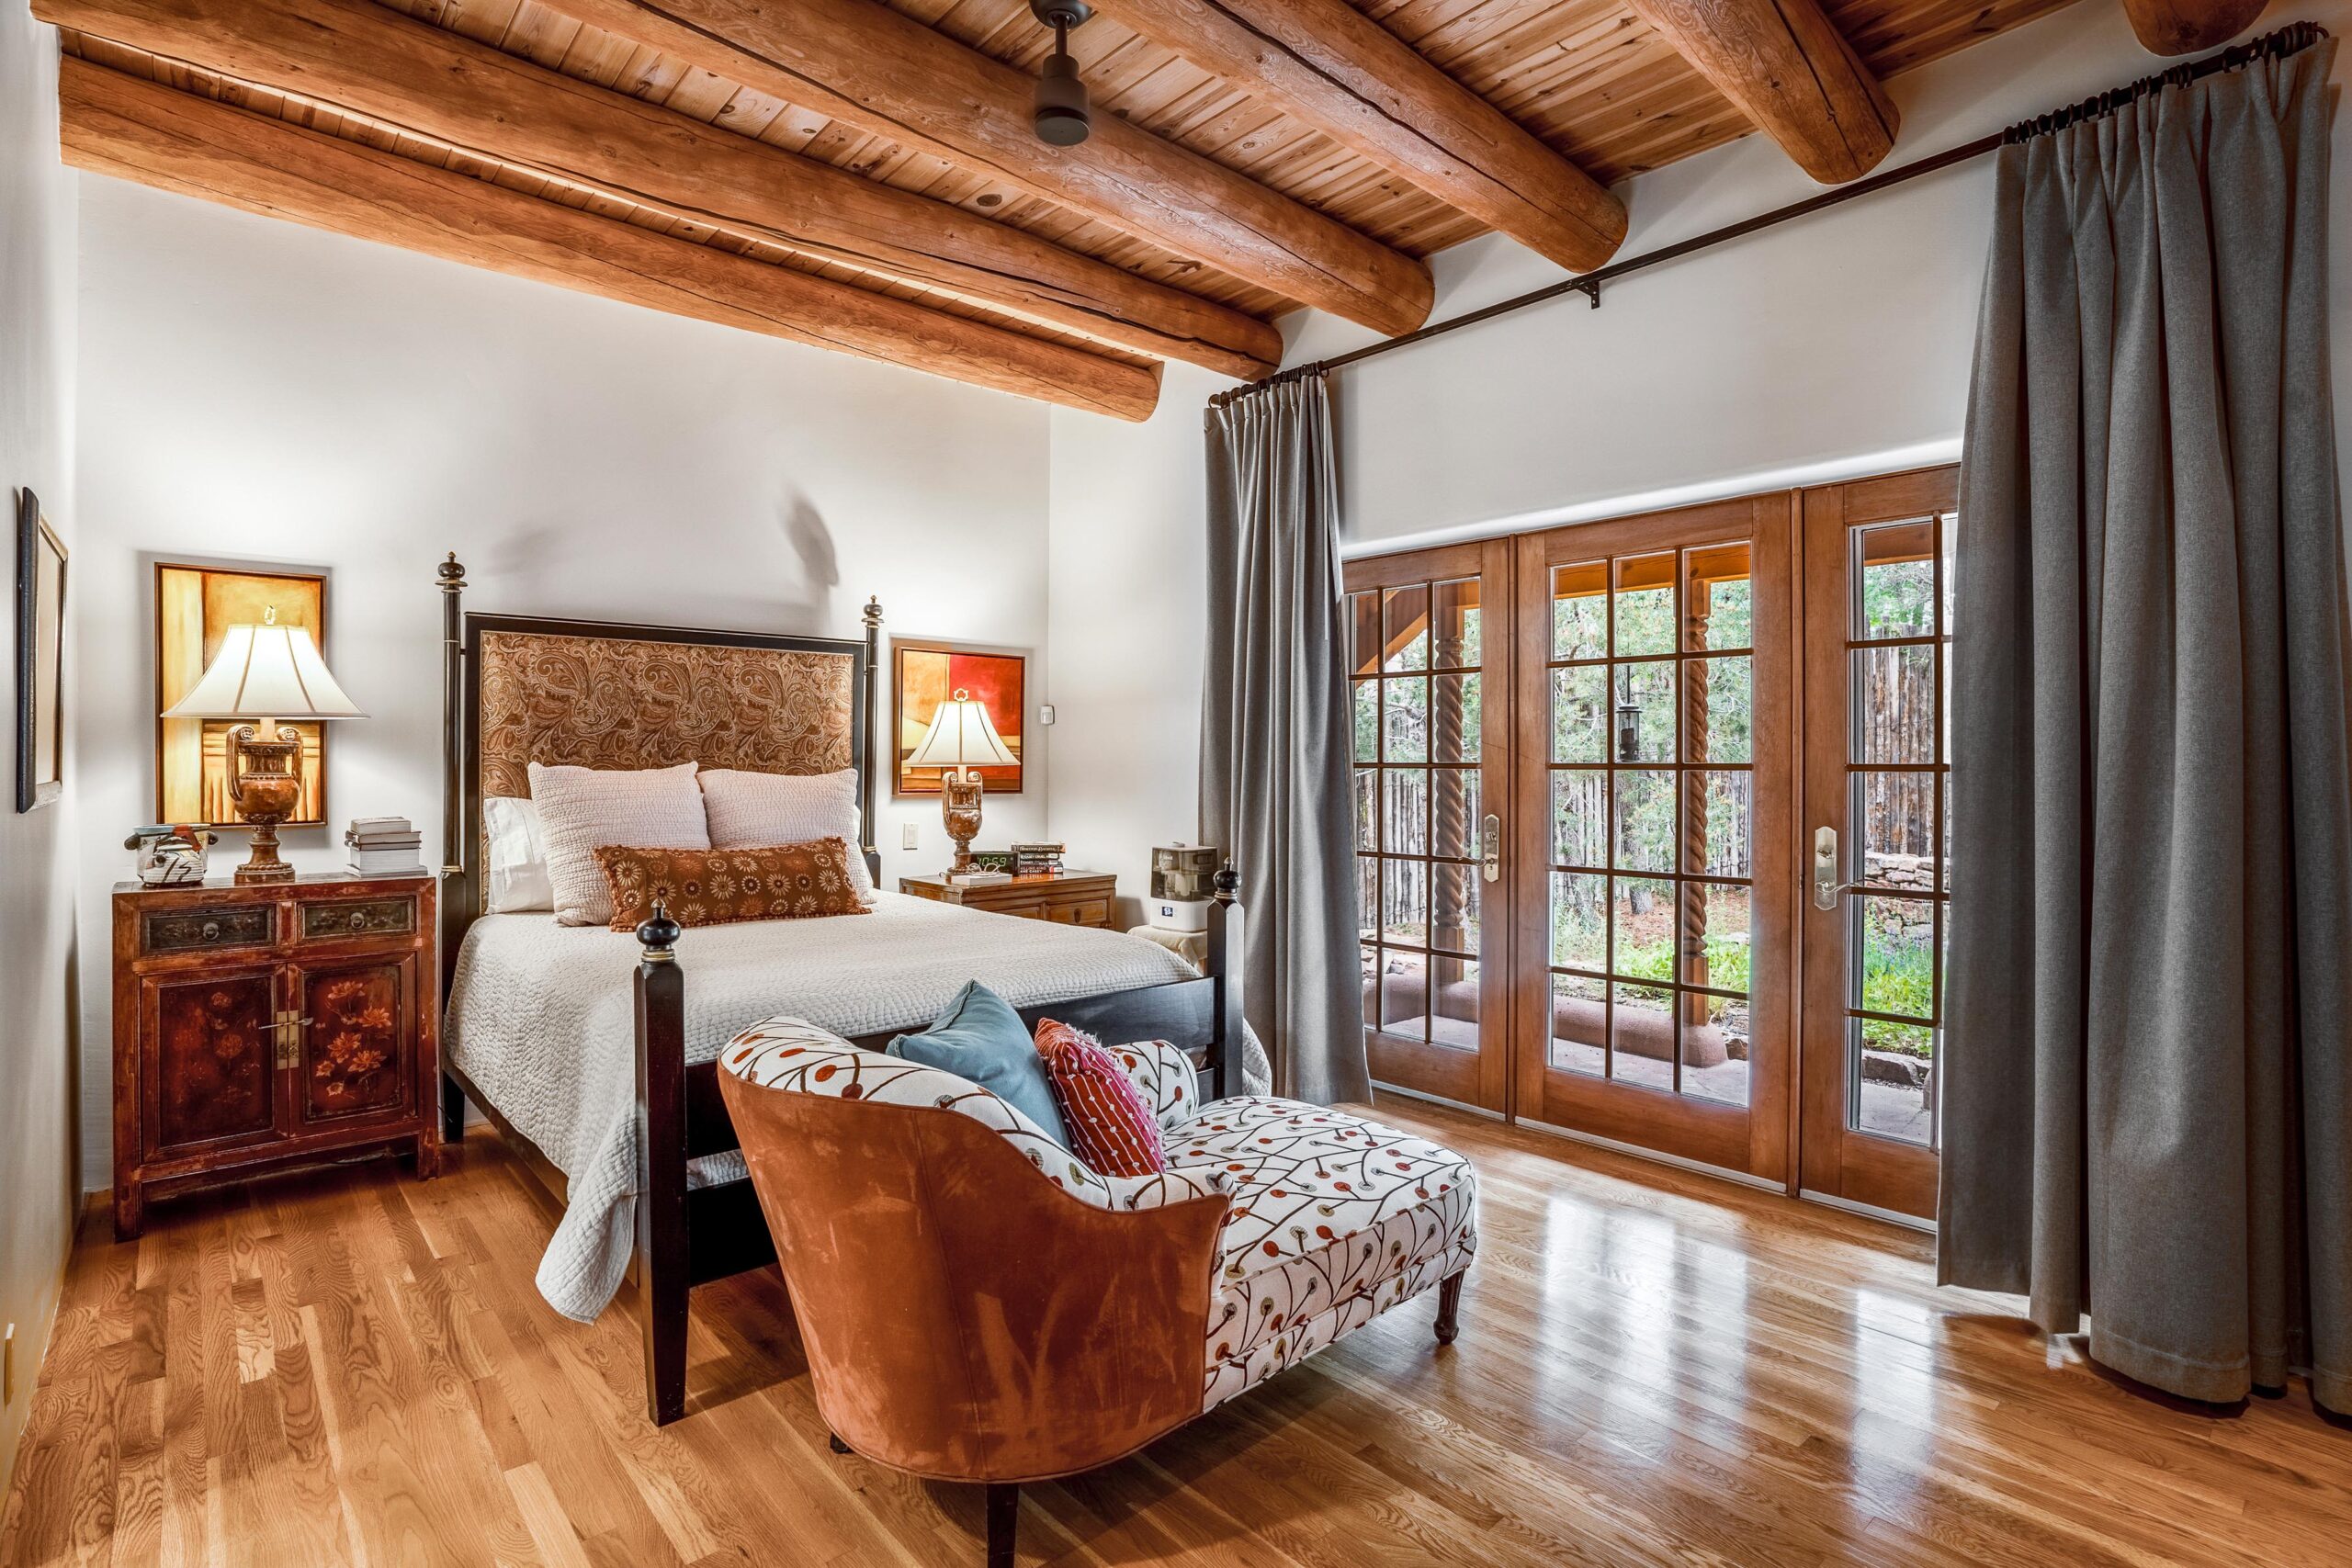 A bedroom in a Santa Fe adobe estate